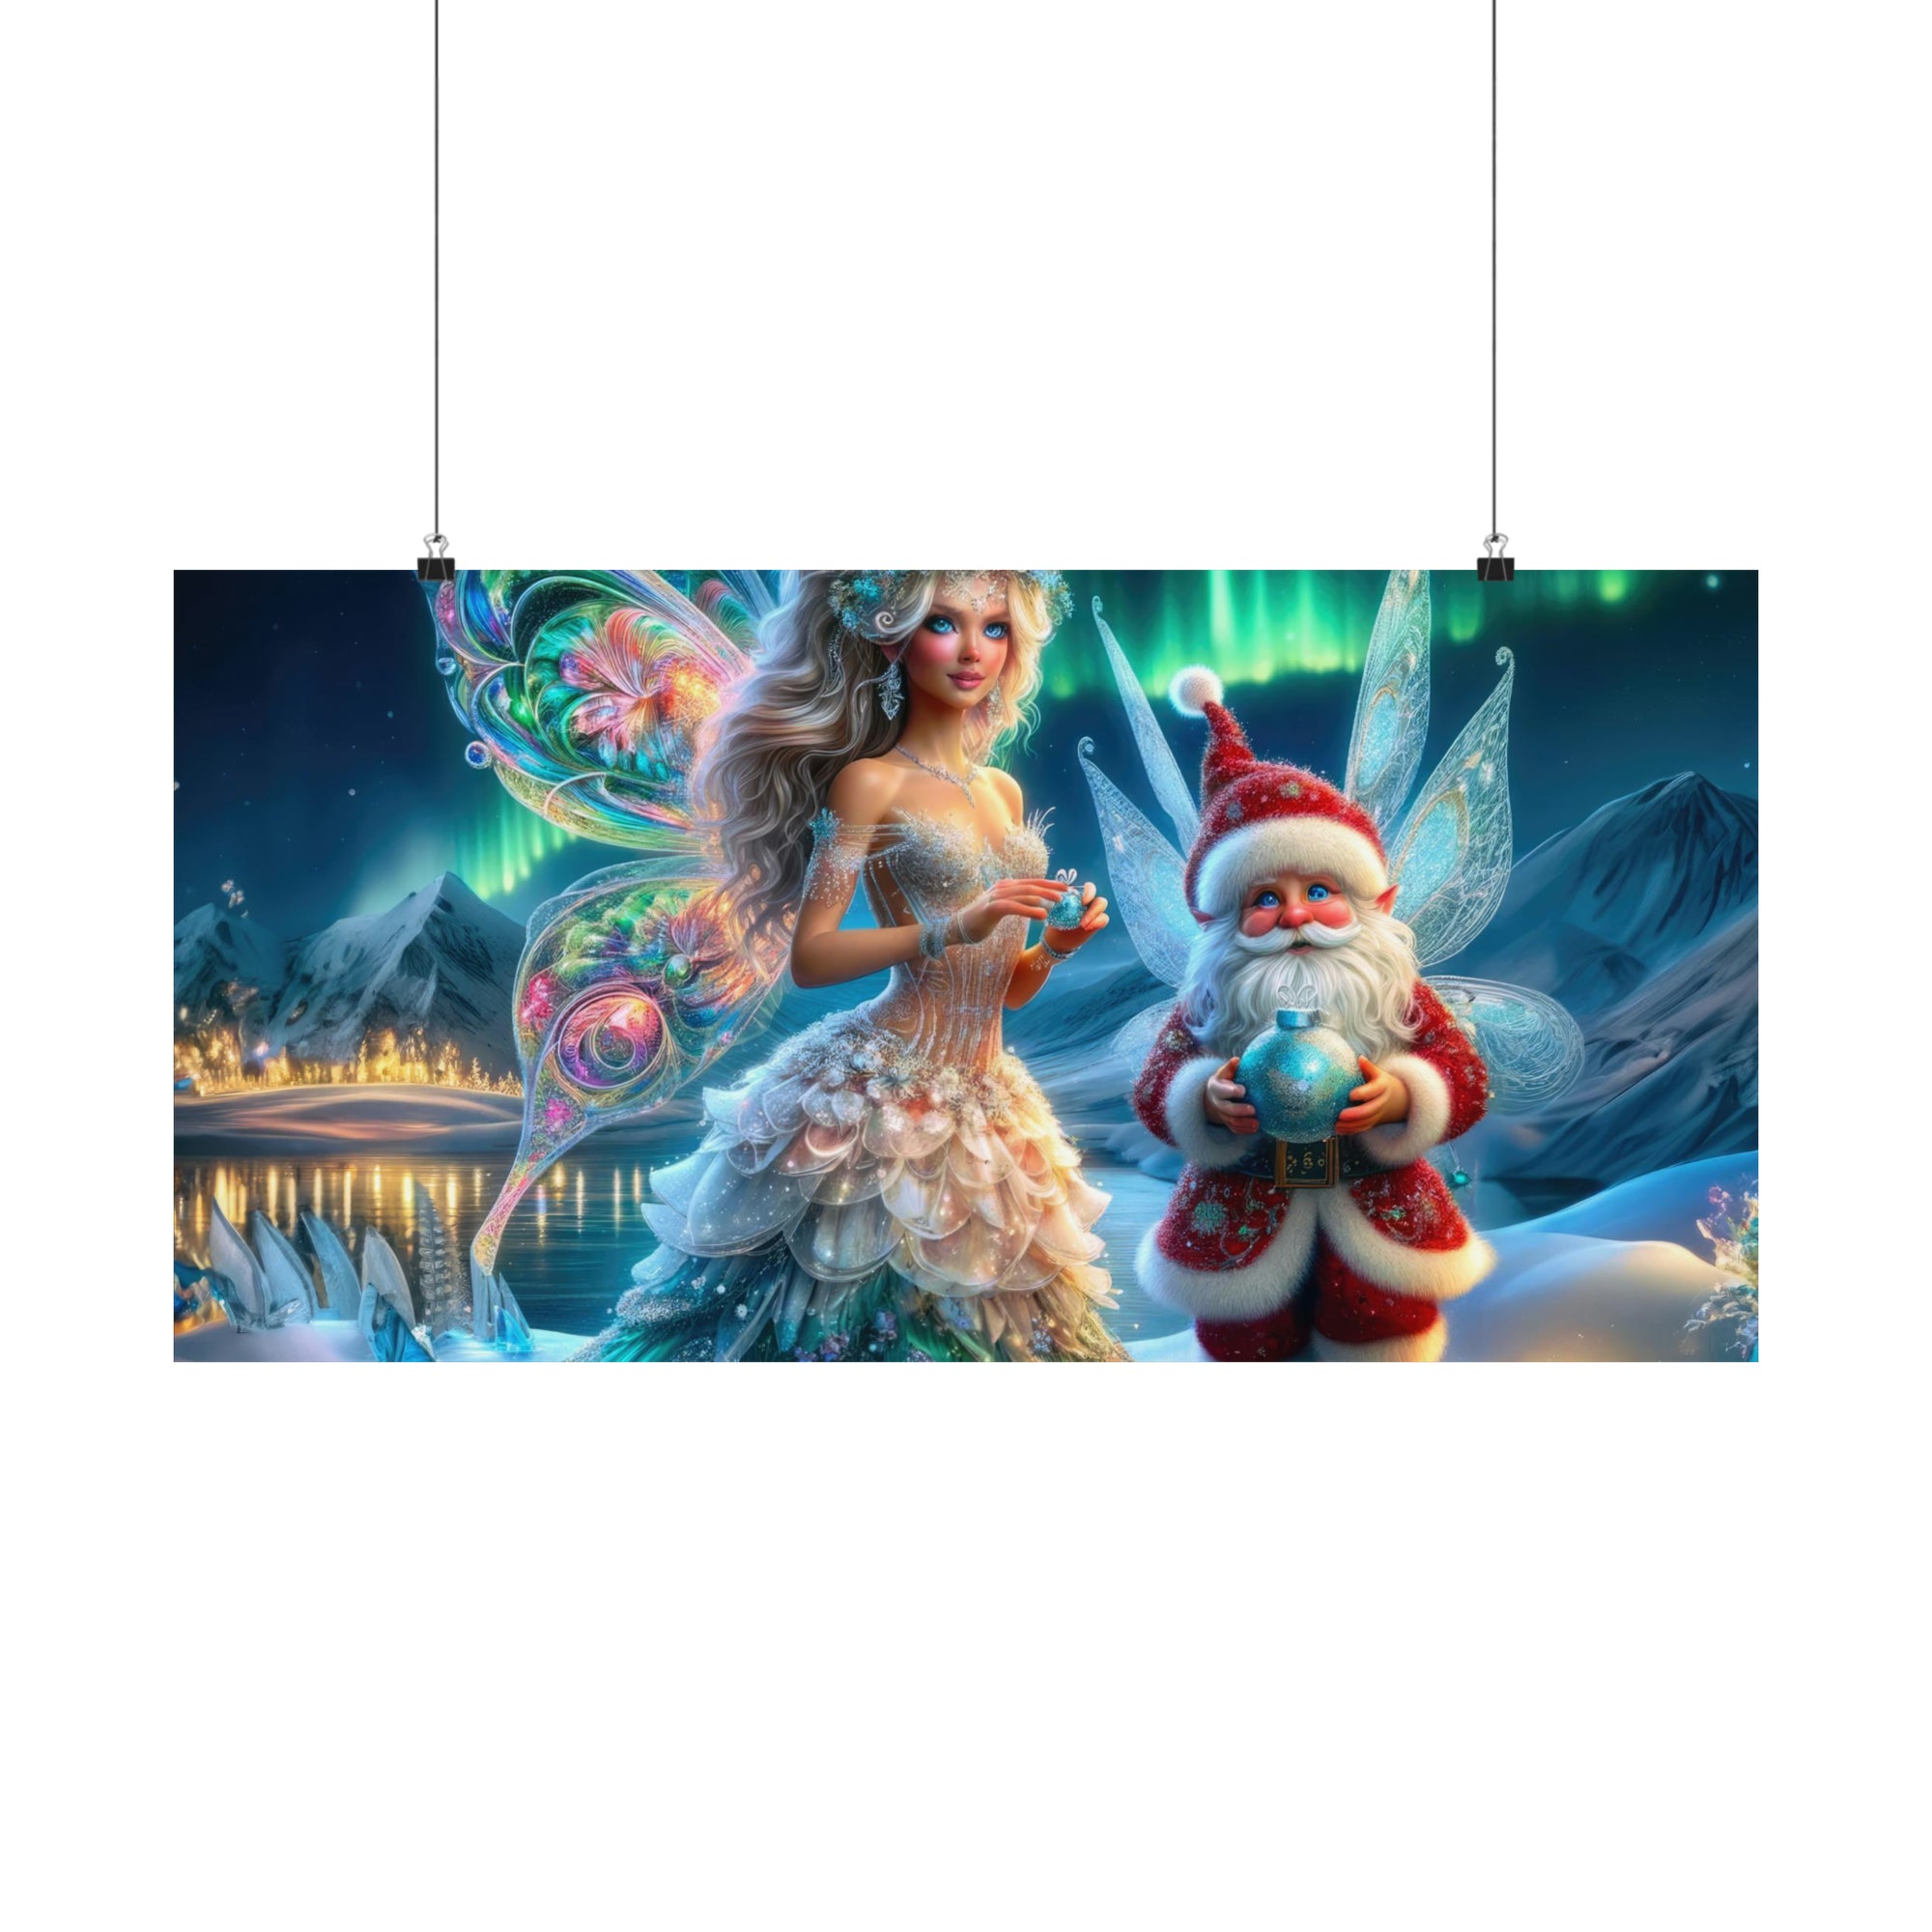 A Fairytale Christmas Poster